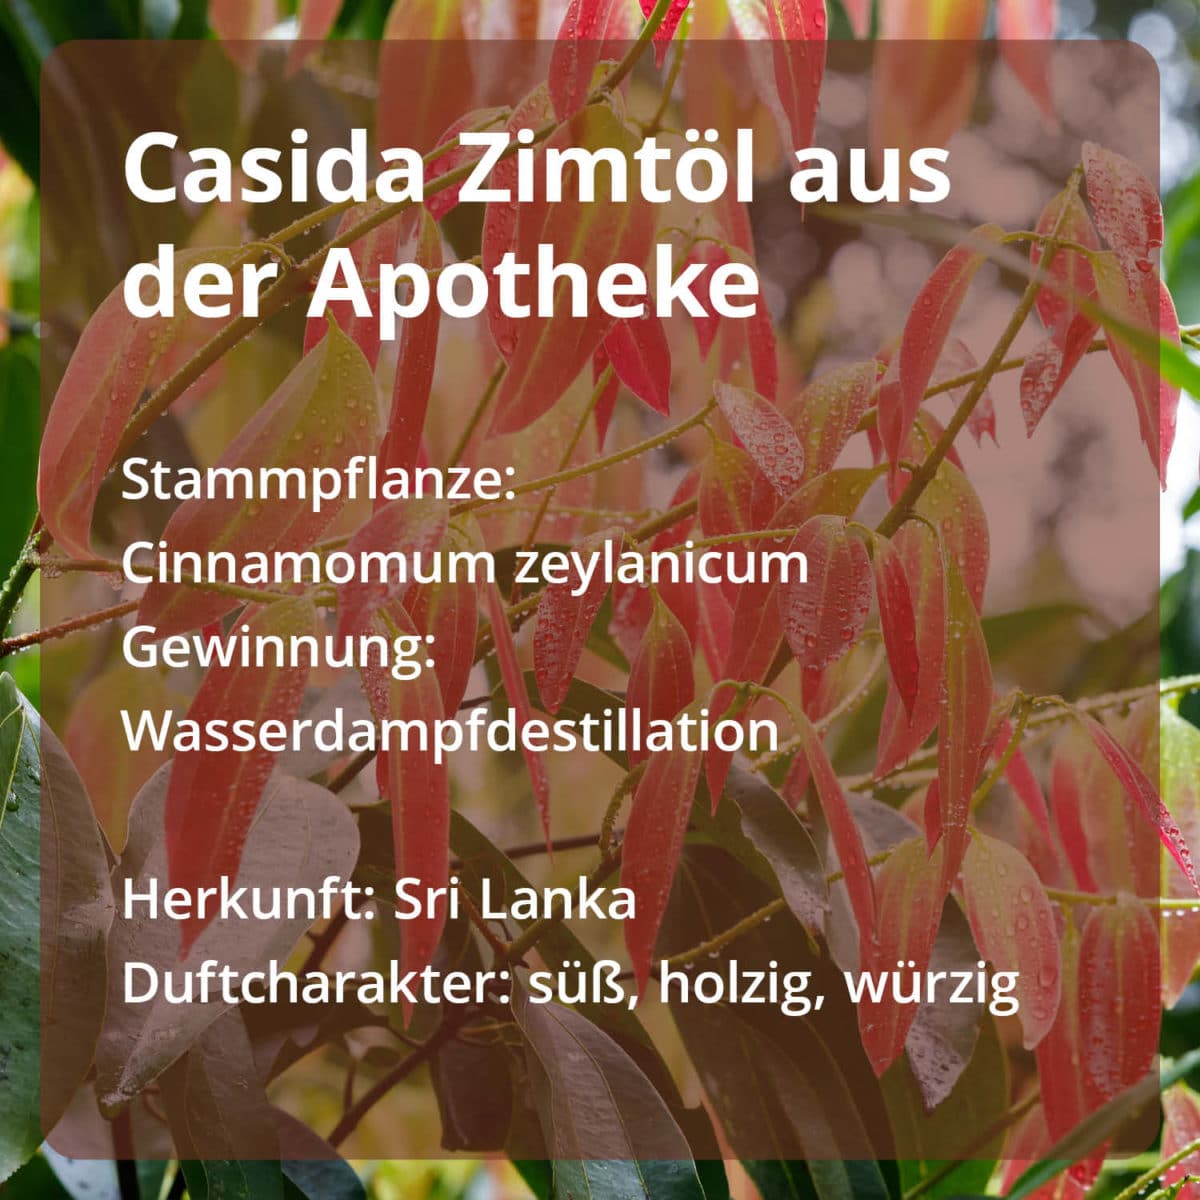 Casida Cinnamon Oil Cinnamomum zeylanicum naturrein – 10 ml 16486826 PZN Apotheke ätherische Öle Diffuser Blätter und Zweige3